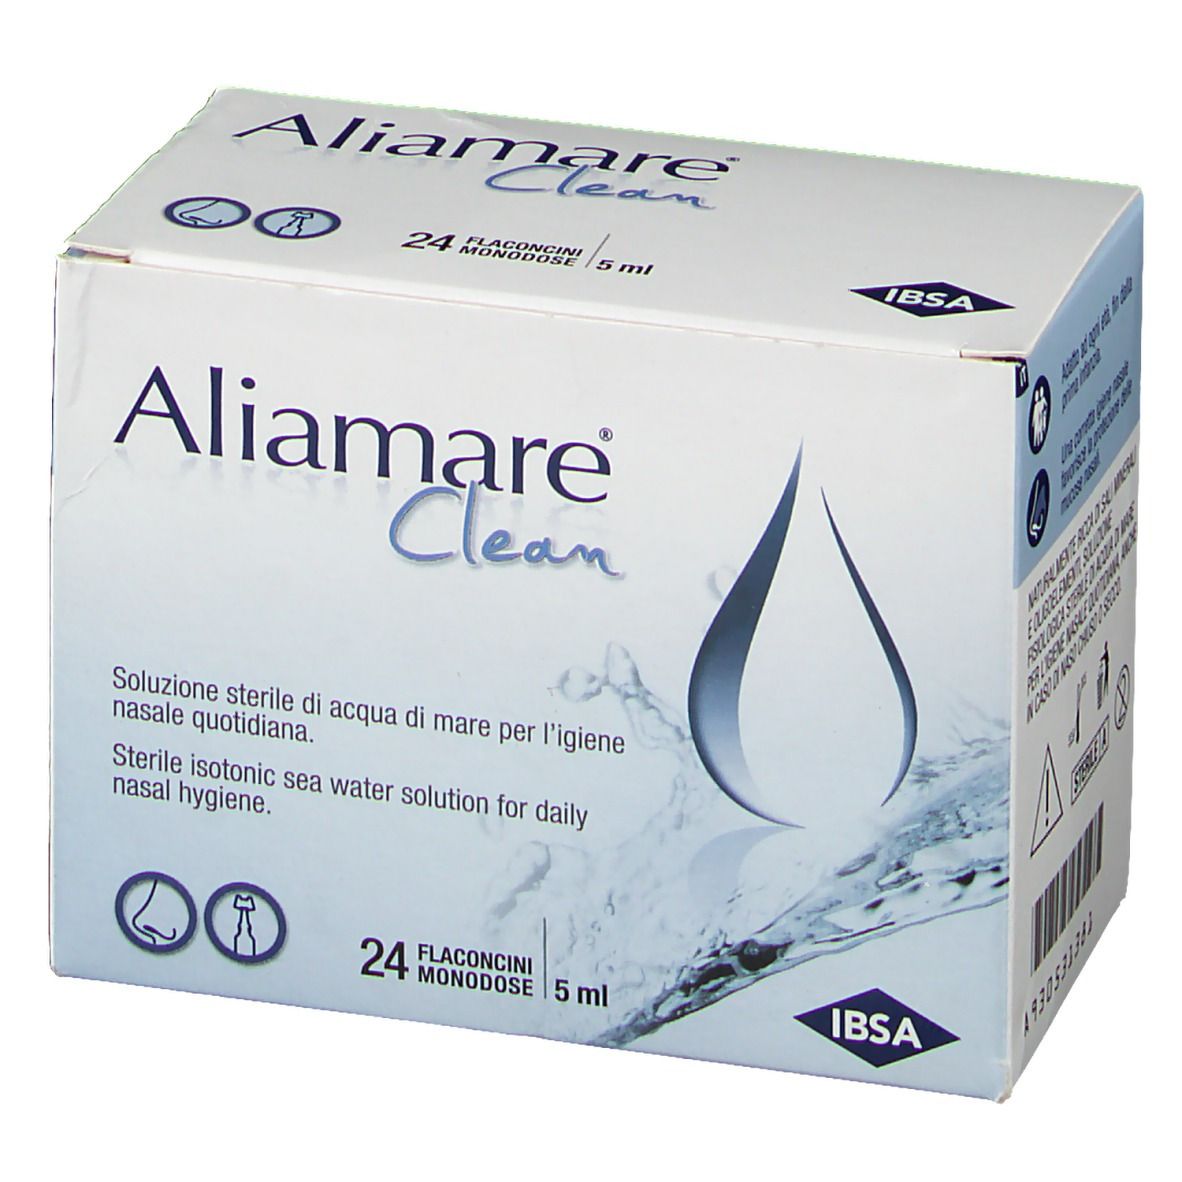 Aliamare® Clean